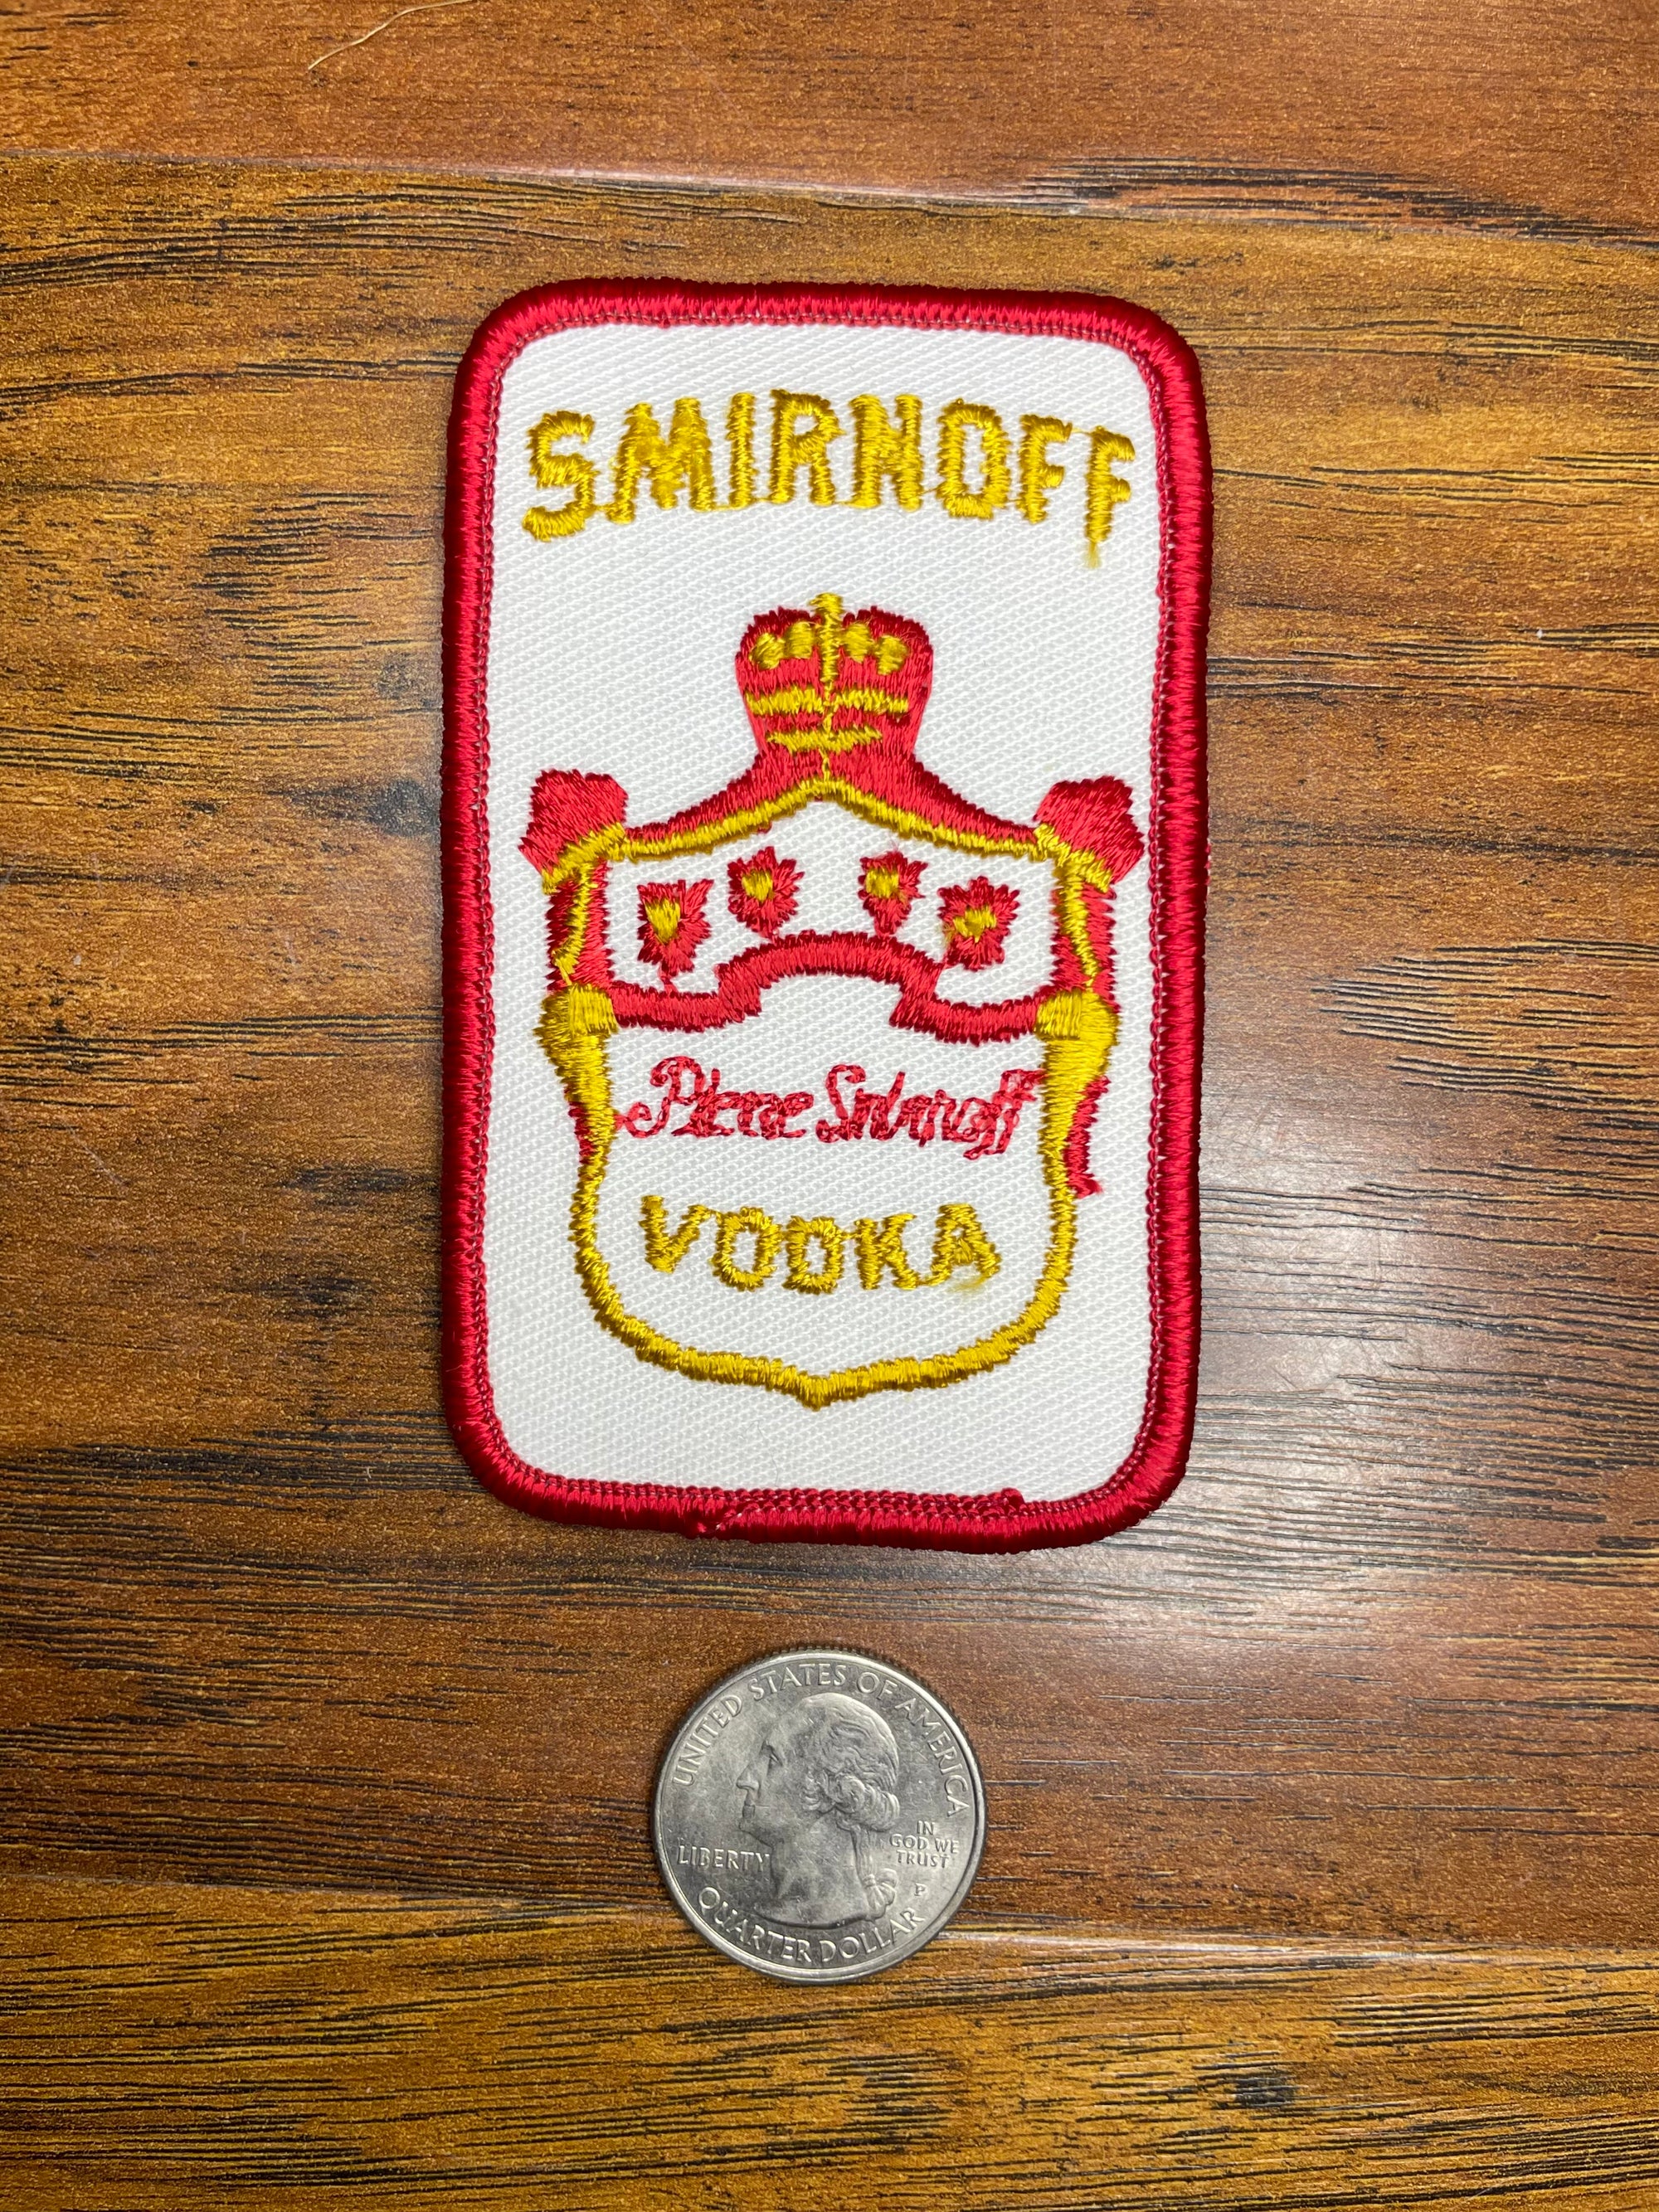 Vintage Smirnoff- Vodka